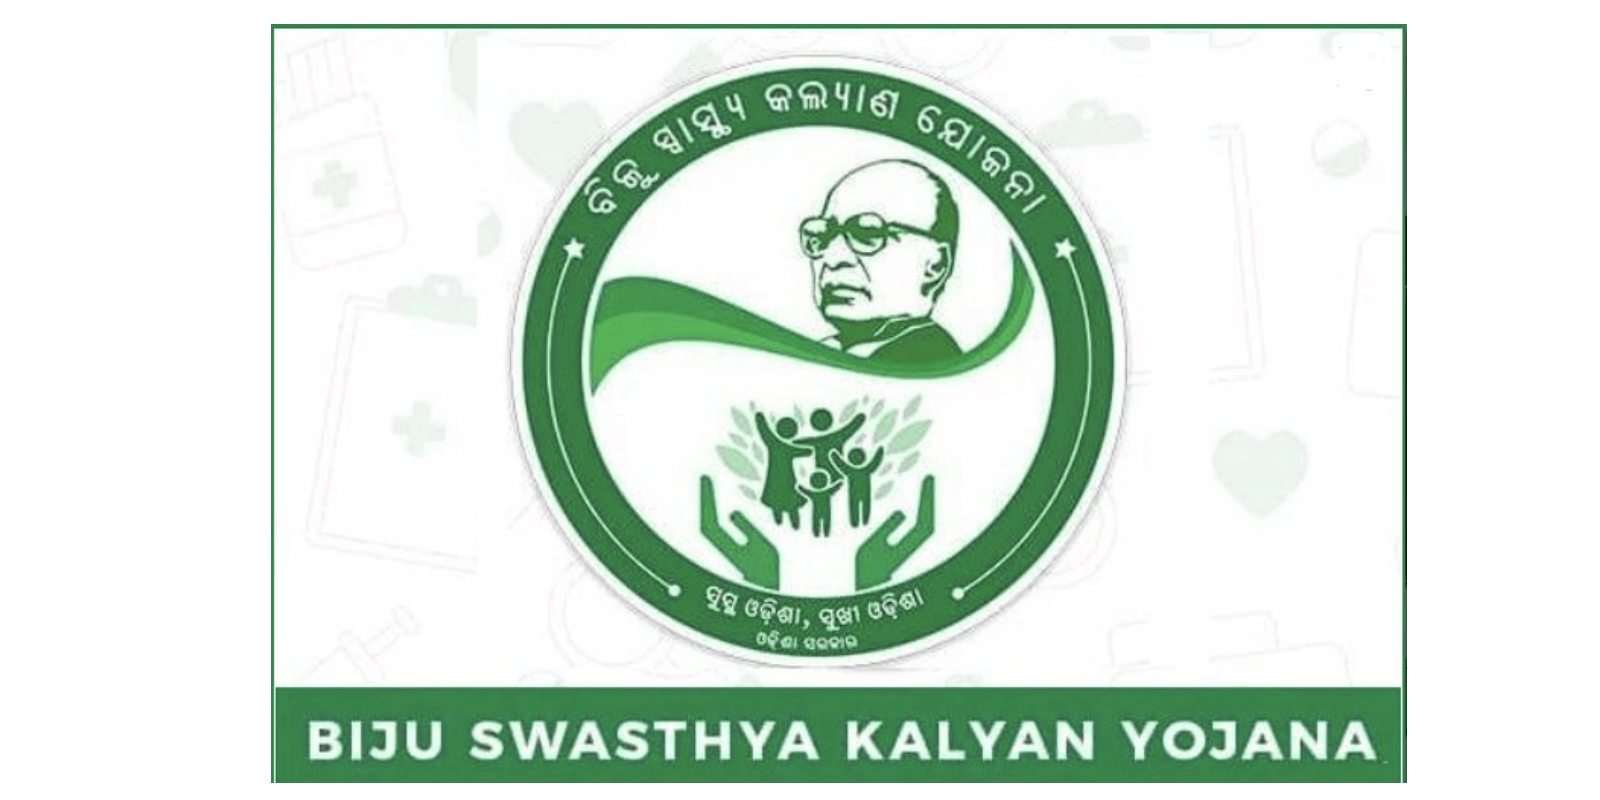 Biju Swasthya Kalyan Yojana (BSKY)